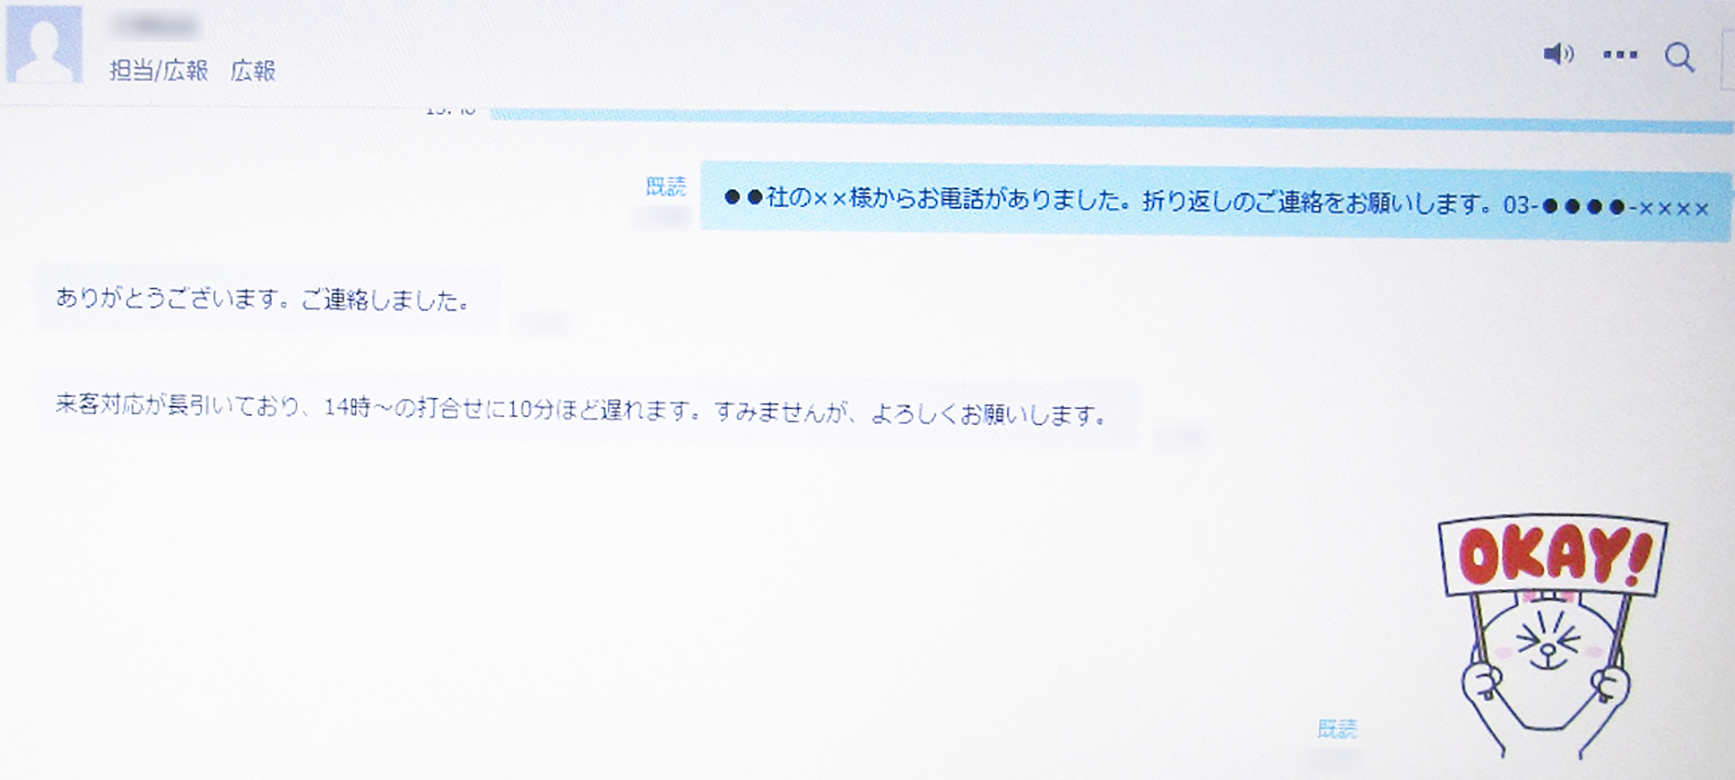 三井住友海上のビジネスＬＩＮＥ画面。スタンプを使うことで、業務メールの堅苦しさがなくなる（右下）